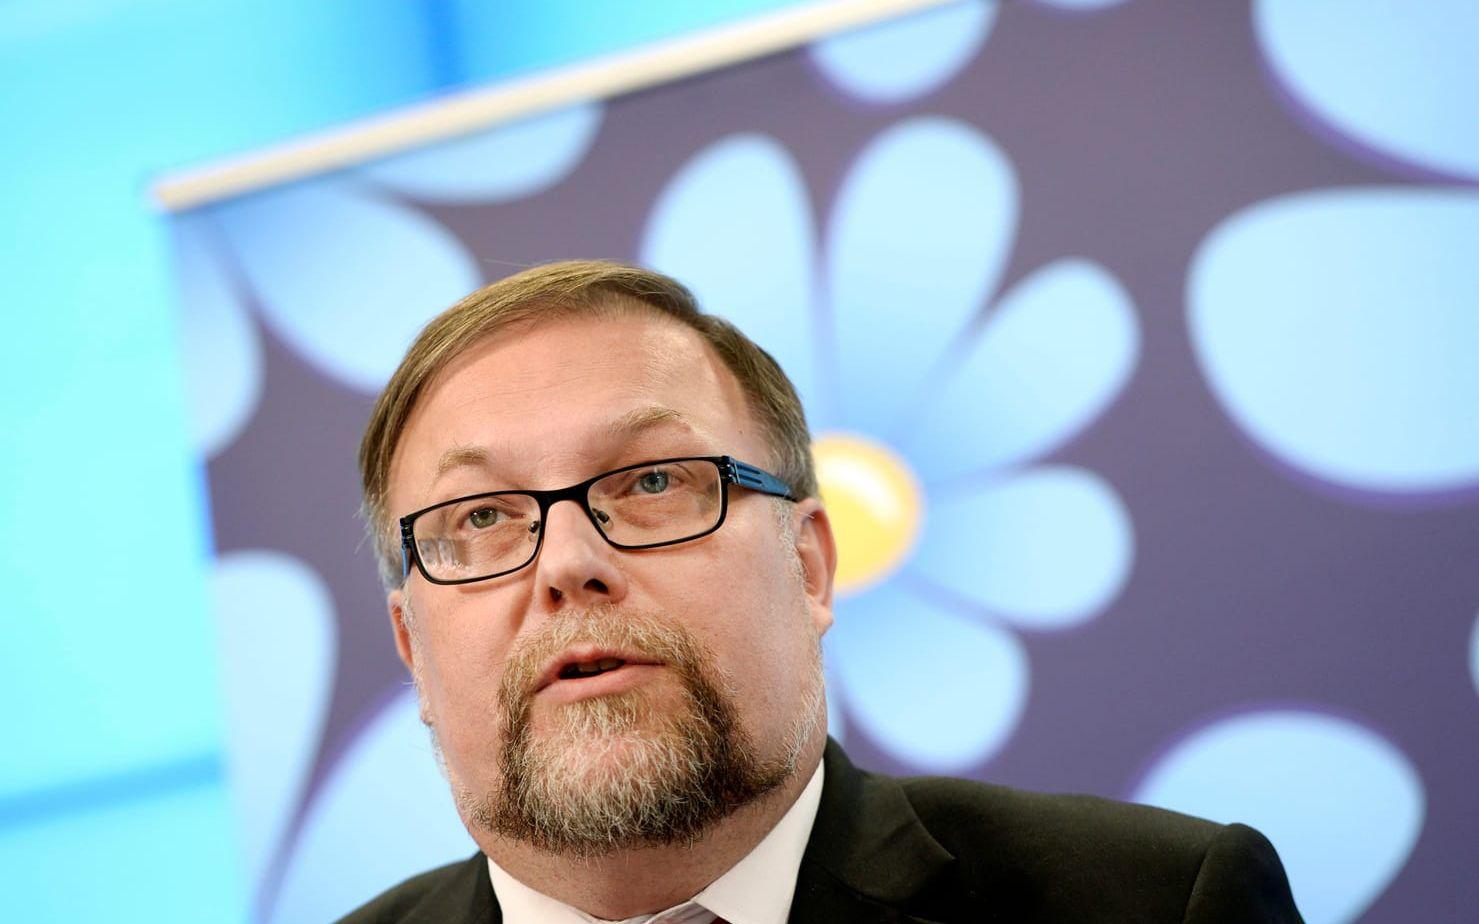 En som sällade sig till kritikerna var Sverigedemokraternas förre partiledare Mikael Jansson, som våren 2017 valde att utmana Jörgen Fogelklou (SD) om ordförandeposten.

Bild:TT
